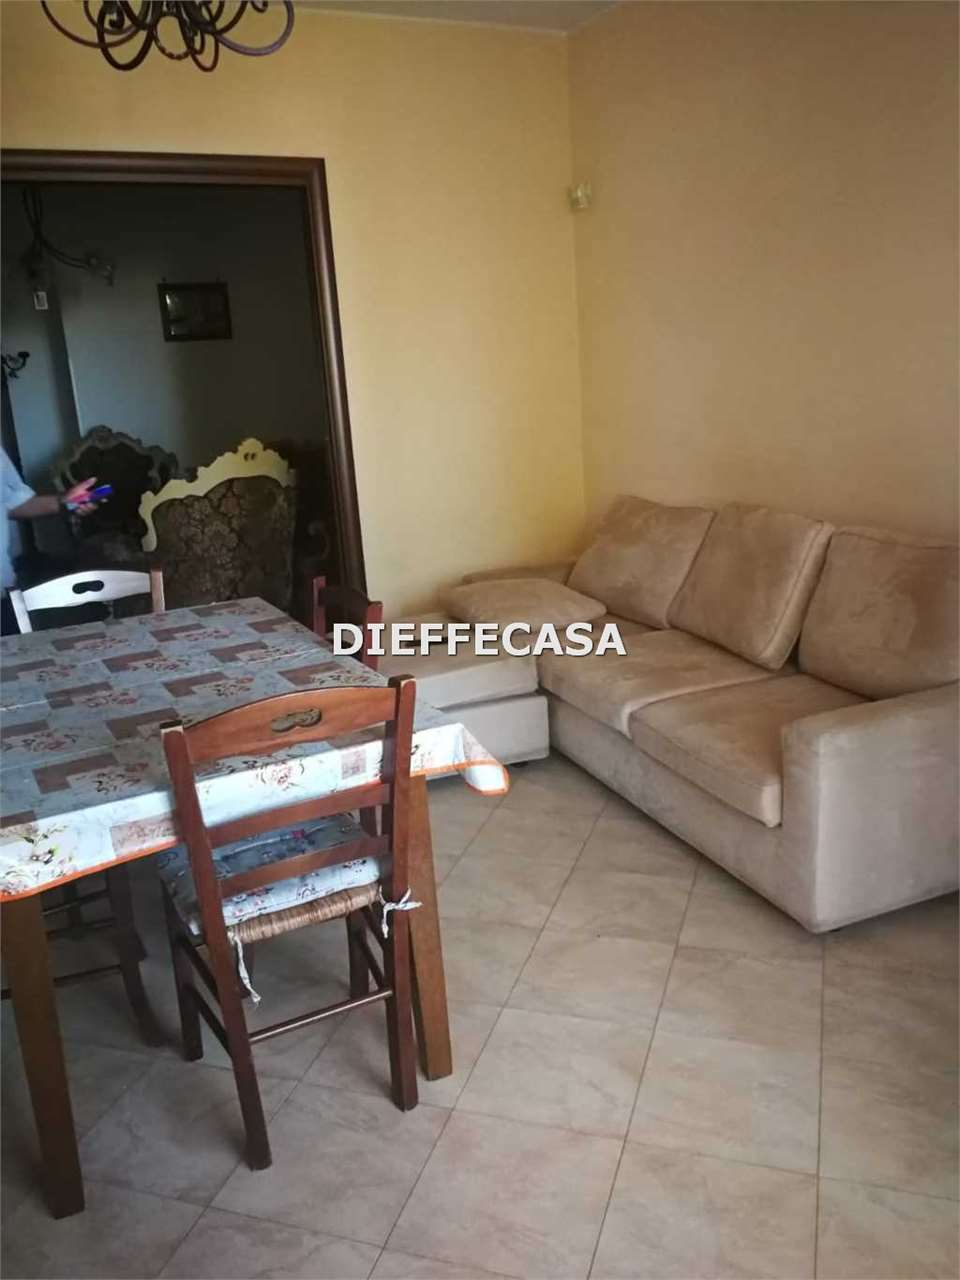 Appartamento in affitto a Marsala, 5 locali, zona Località: Periferia lato Mazara del Vallo, prezzo € 600 | CambioCasa.it